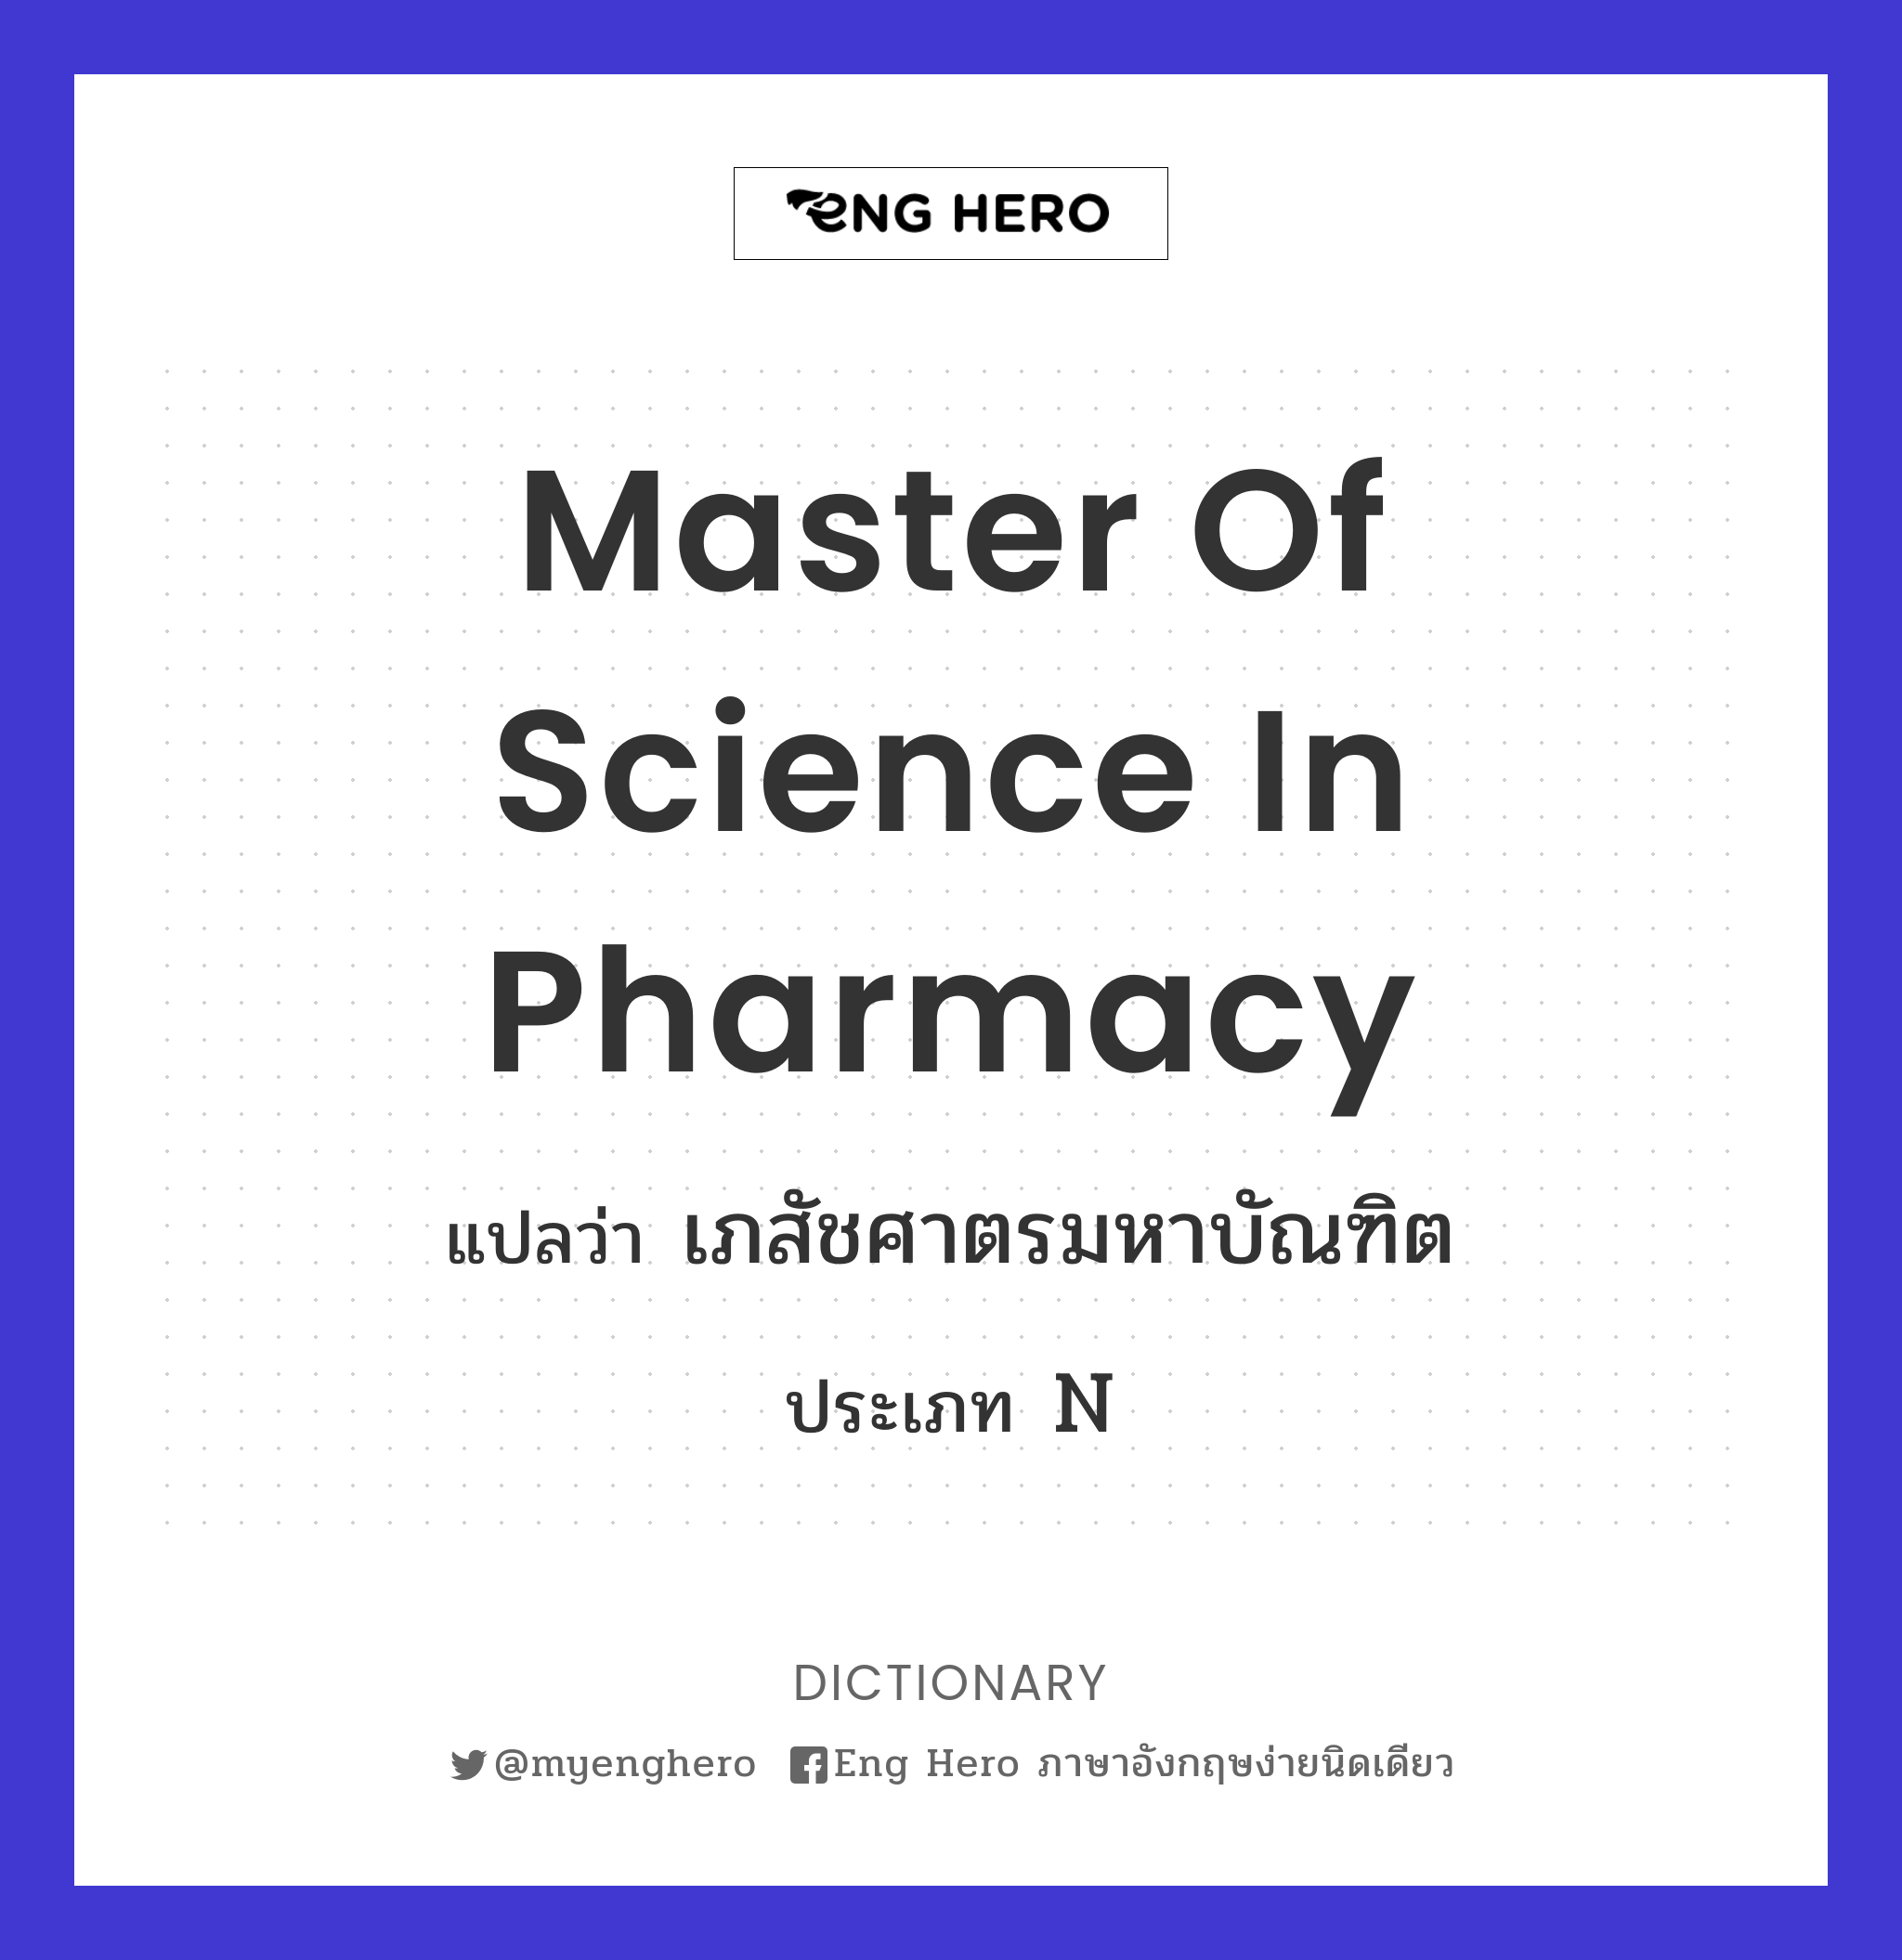 Master of Science in Pharmacy